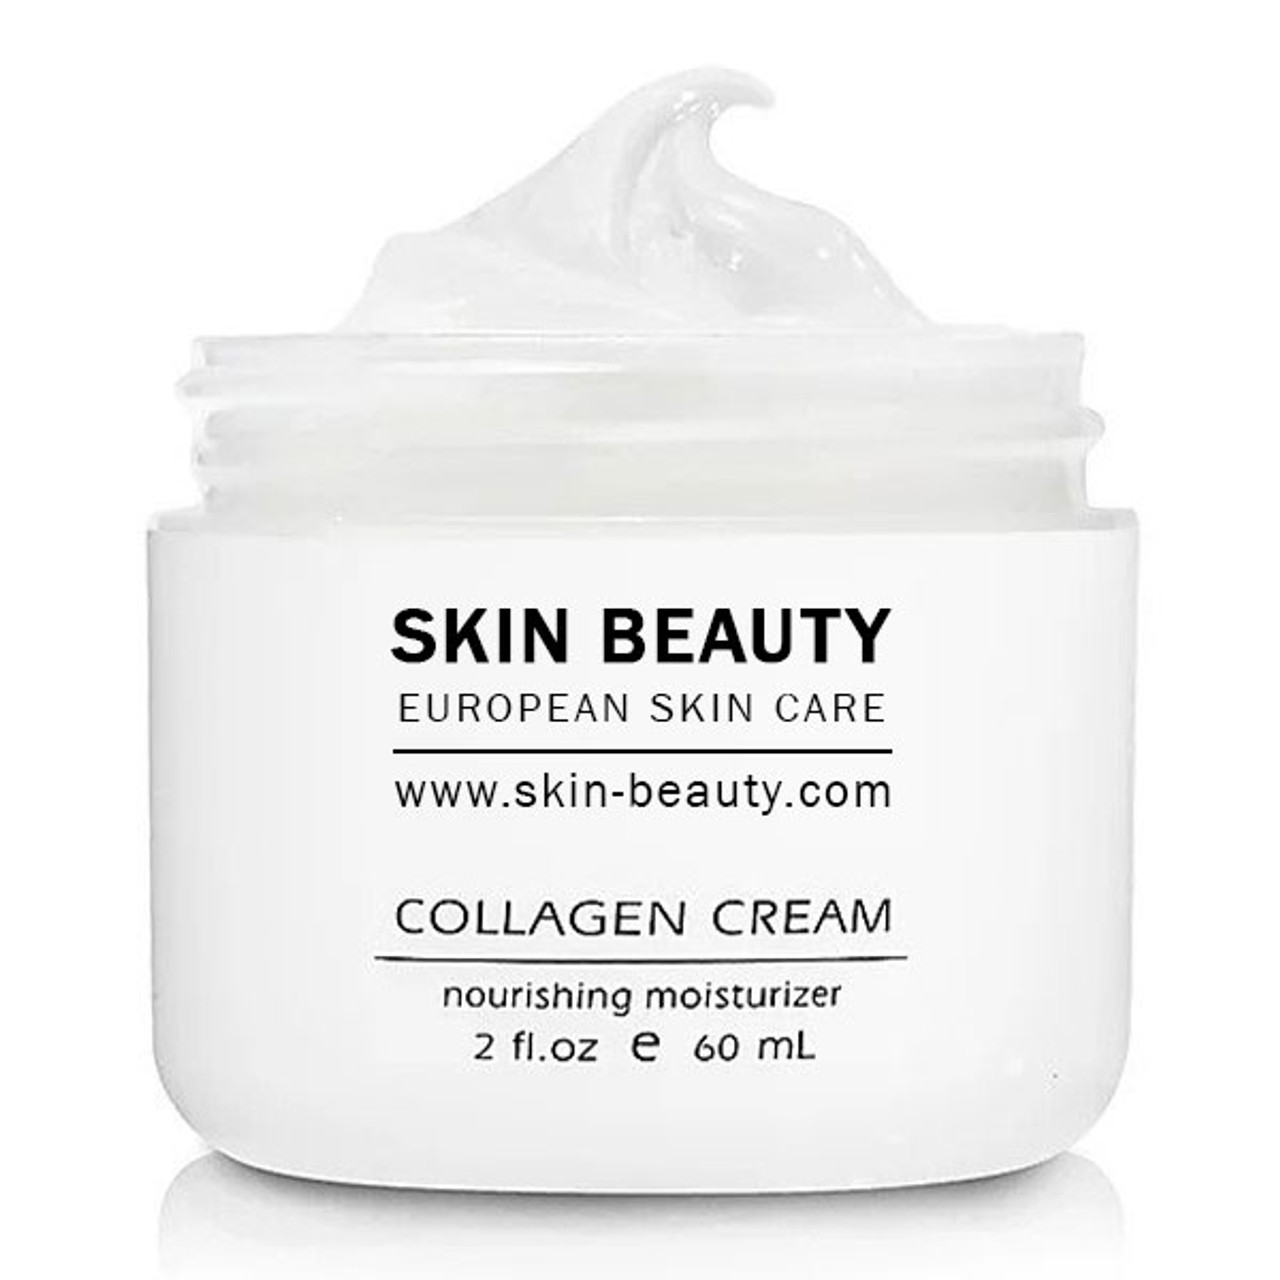 Skin Beauty Collagen Cream For Wrinkles | Anti Aging Moisturizer